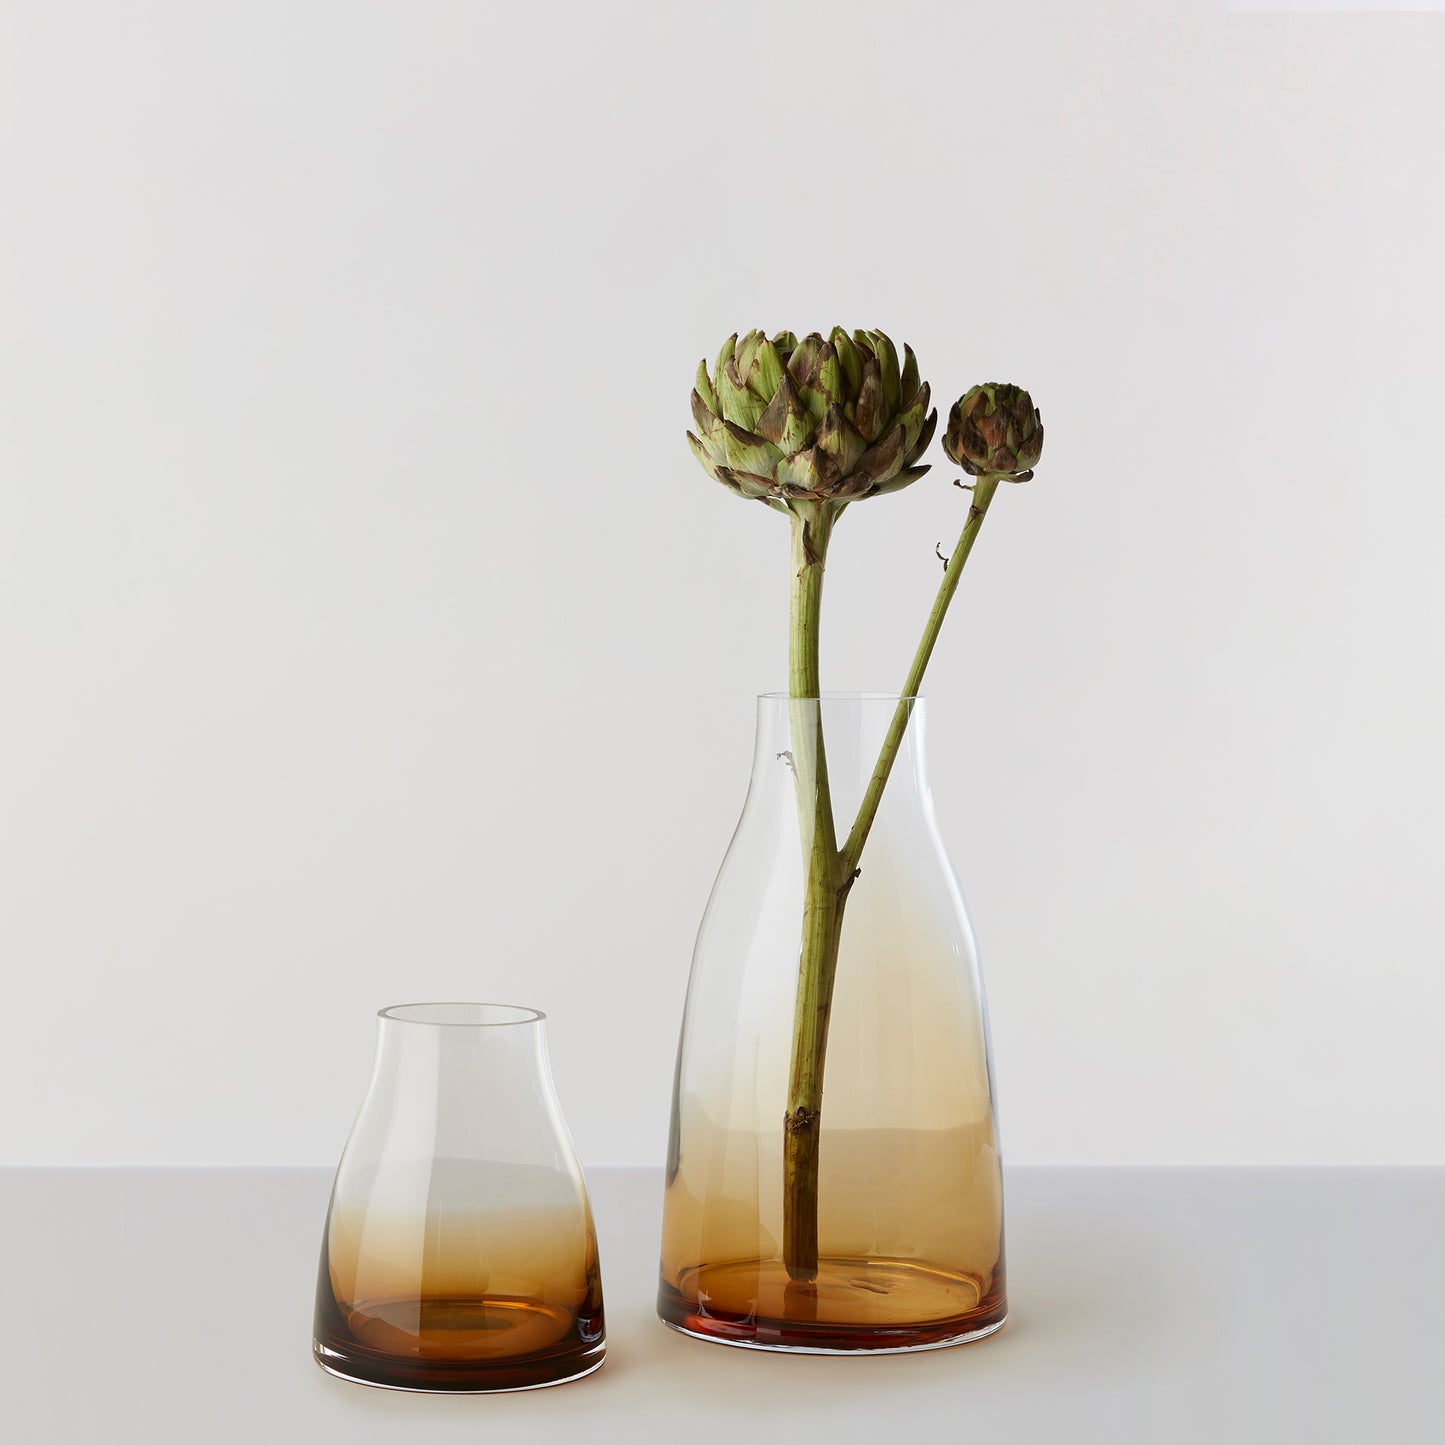 Flower Vase no. 3 - Burnt sienna